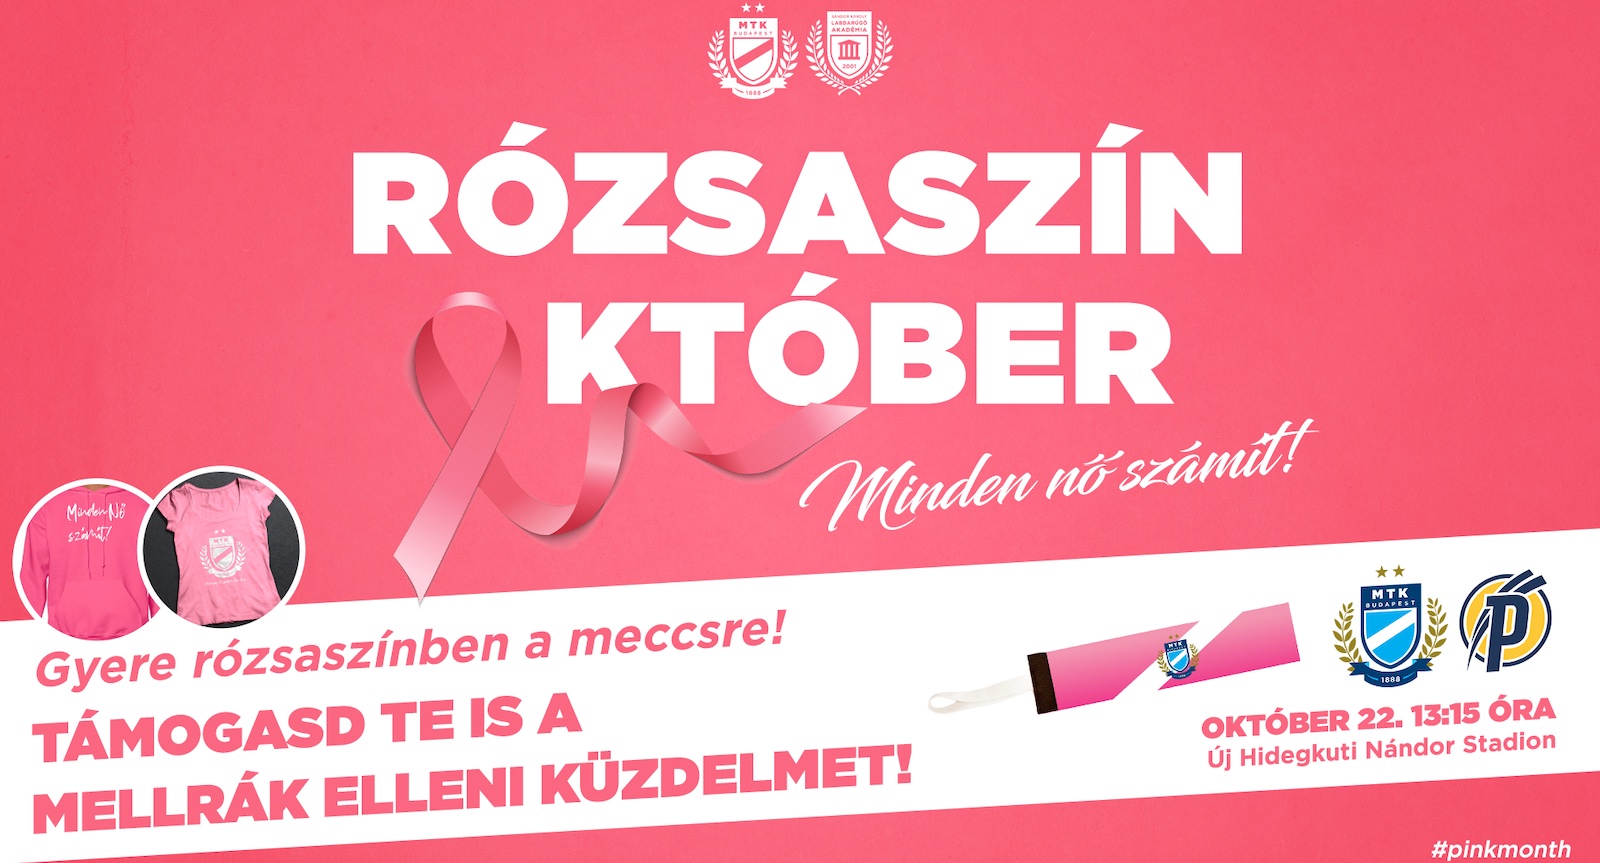 "Minden nő számít"! - A Puskás Akadémia elleni meccsen is népszerűsítjük a Rózsaszín október mozgalmat